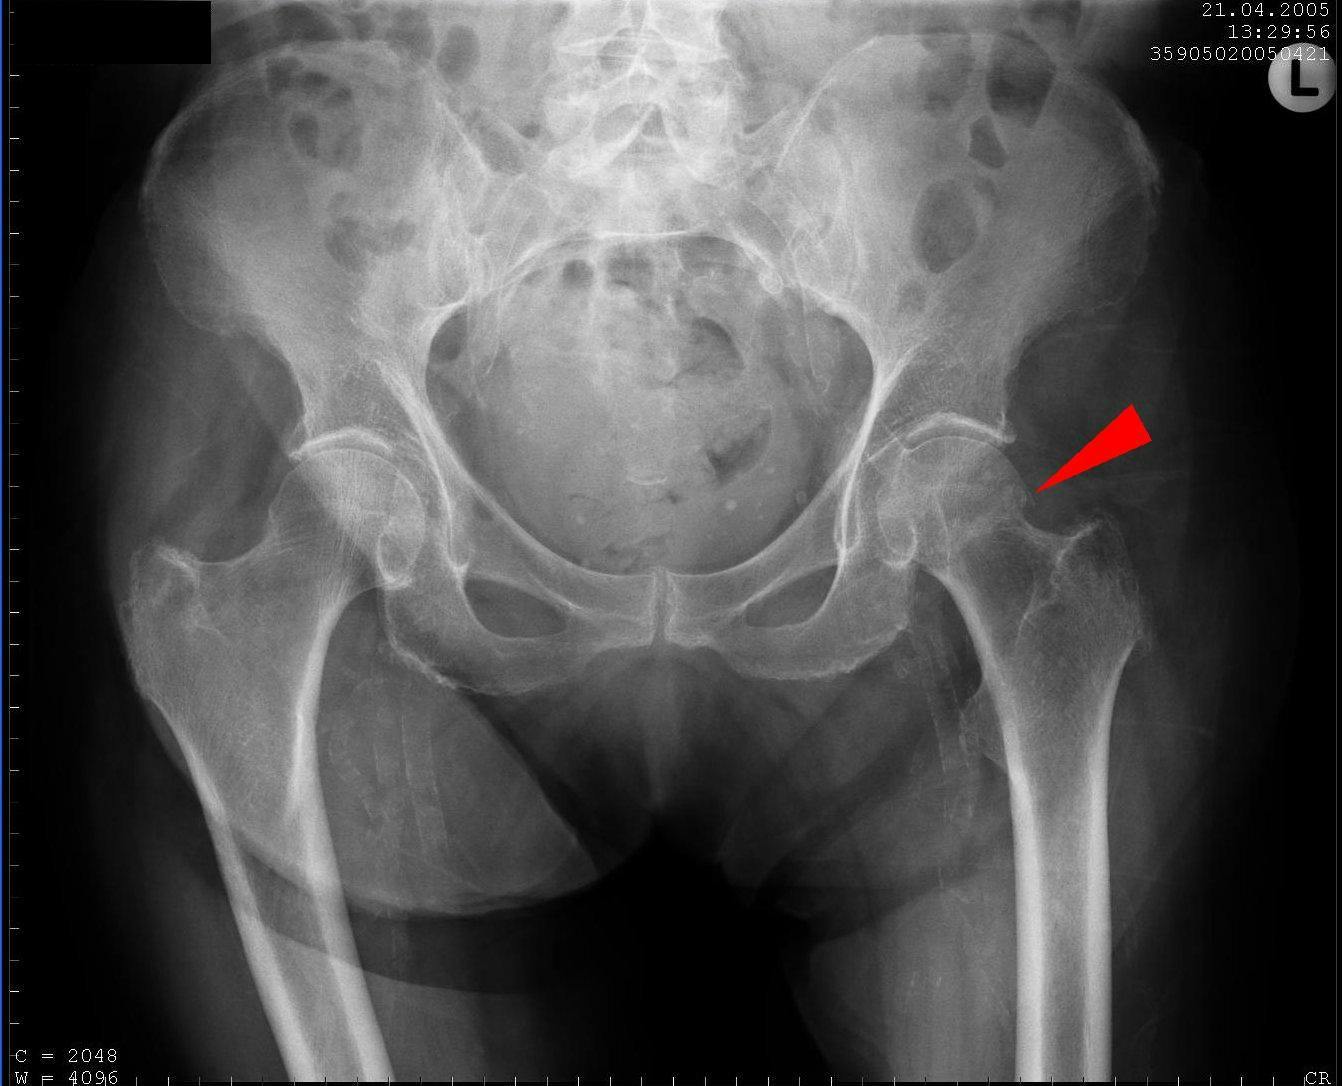 Diese Röntgenaufnahme zeigt eine mediale Schenkelhalsfraktur ohne Verschiebung oder Verdrehung (siehe roter Pfeil). Quelle: wikipedia/Sjoehest